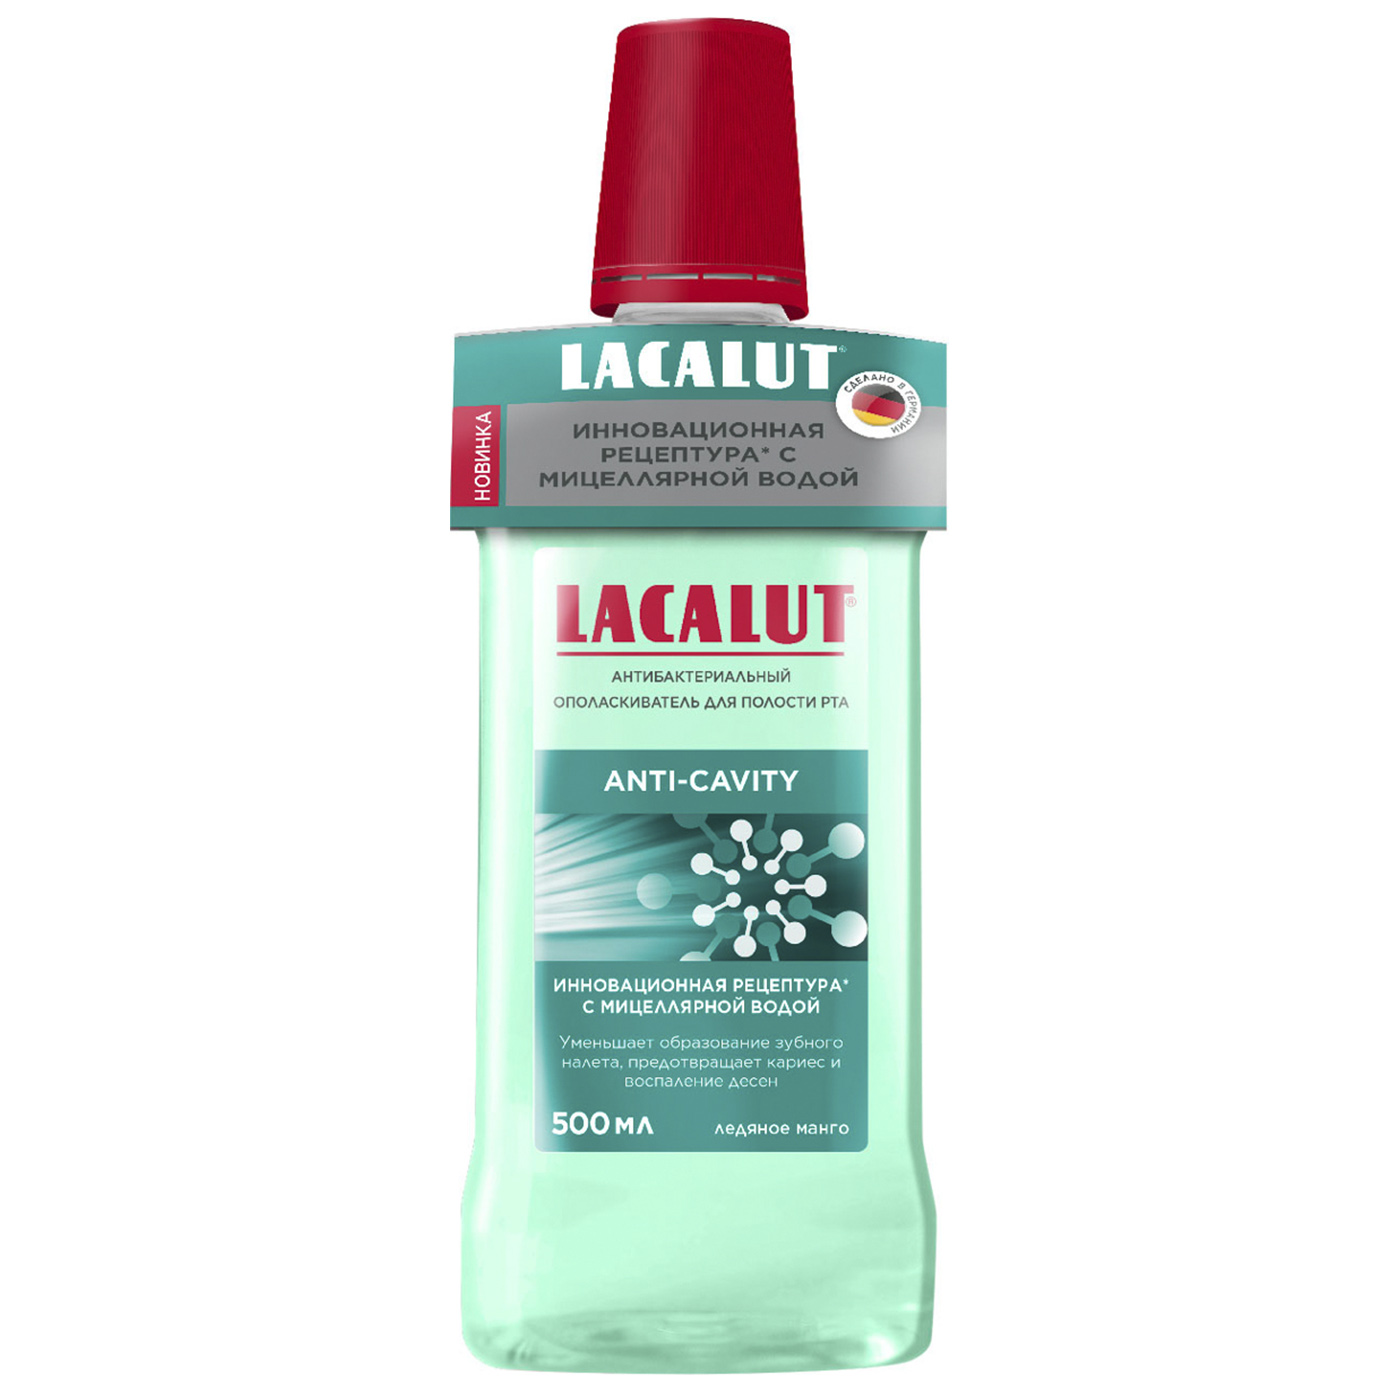 Lacalut Антибактериальный ополаскиватель для полости рта Anti-Cavity, 500 мл (Lacalut, Ополаскиватели)